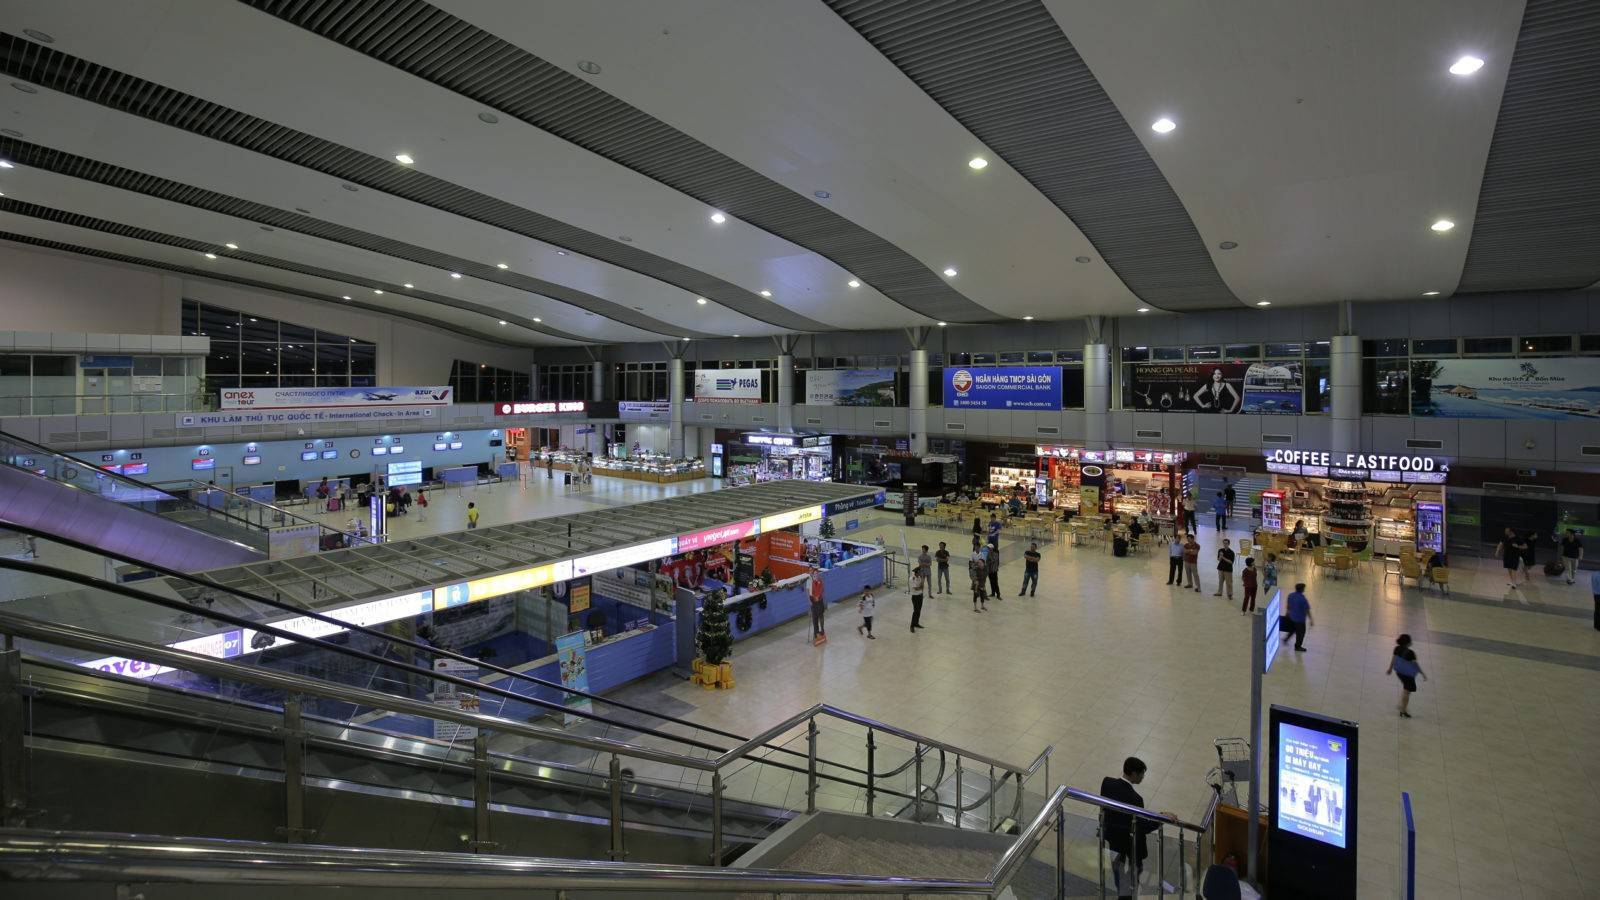 Аэропорт фукуок (вьетнам), узнать расписание на самолет из аэропорта фукуока, онлайн табло прилета и вылета